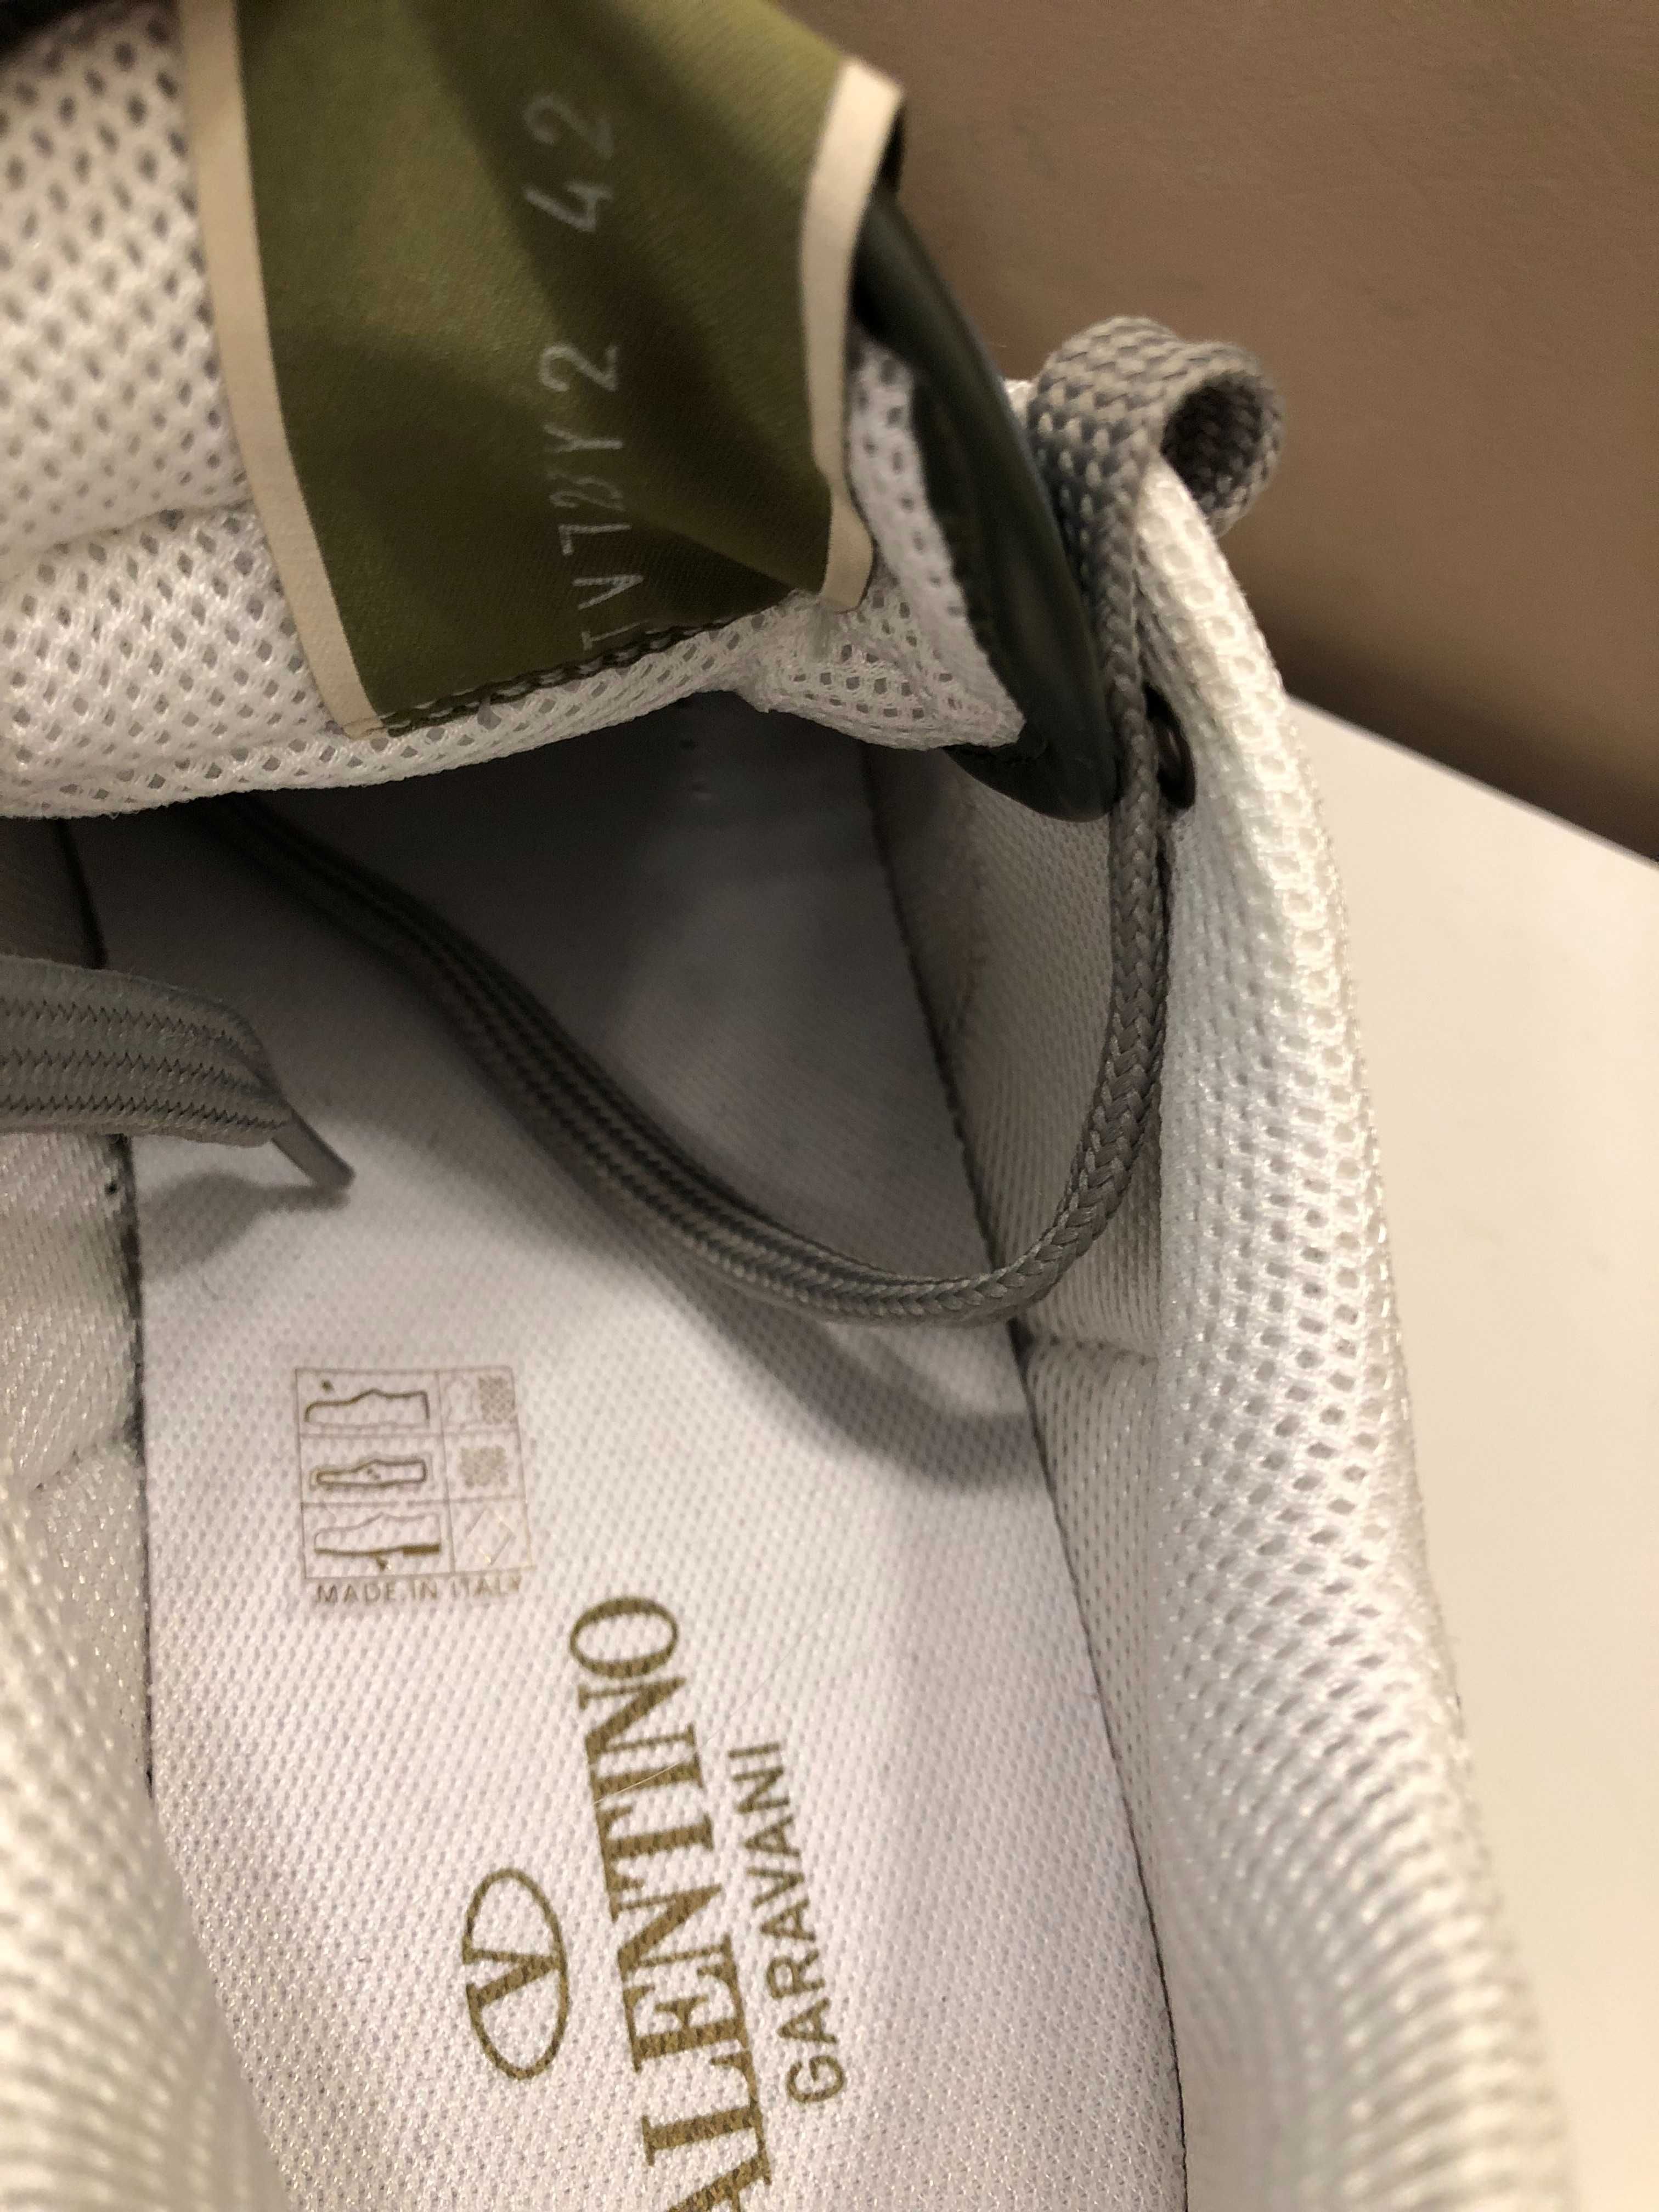 Valentino Garavani sneakers 42 autentici, full box, retail 580 euro